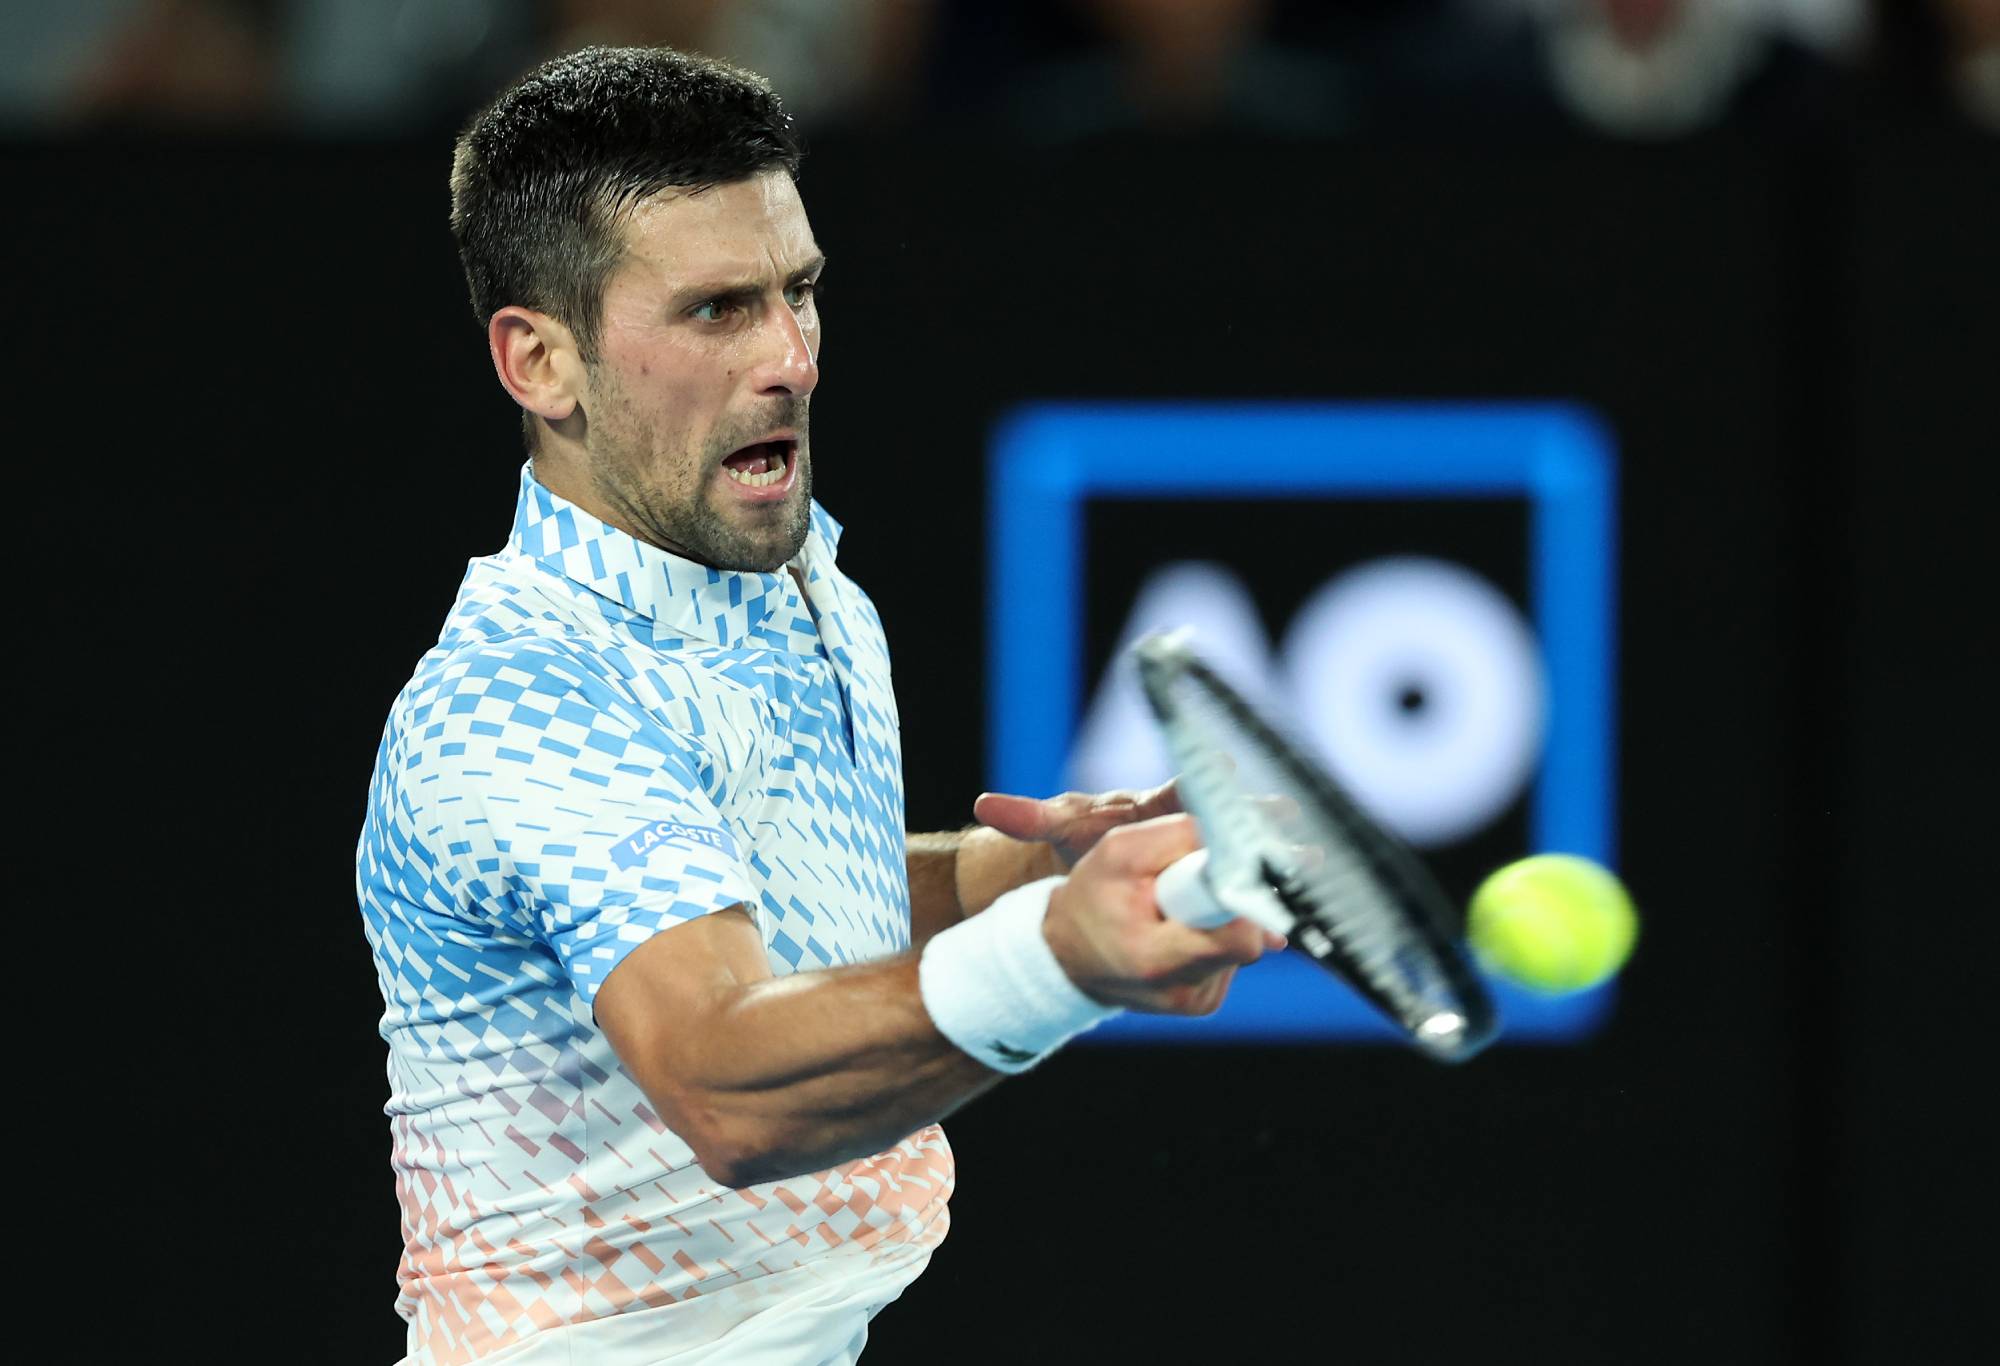 Klaim mengejutkan direktur Aus Open tentang cedera hamstring Djokovic